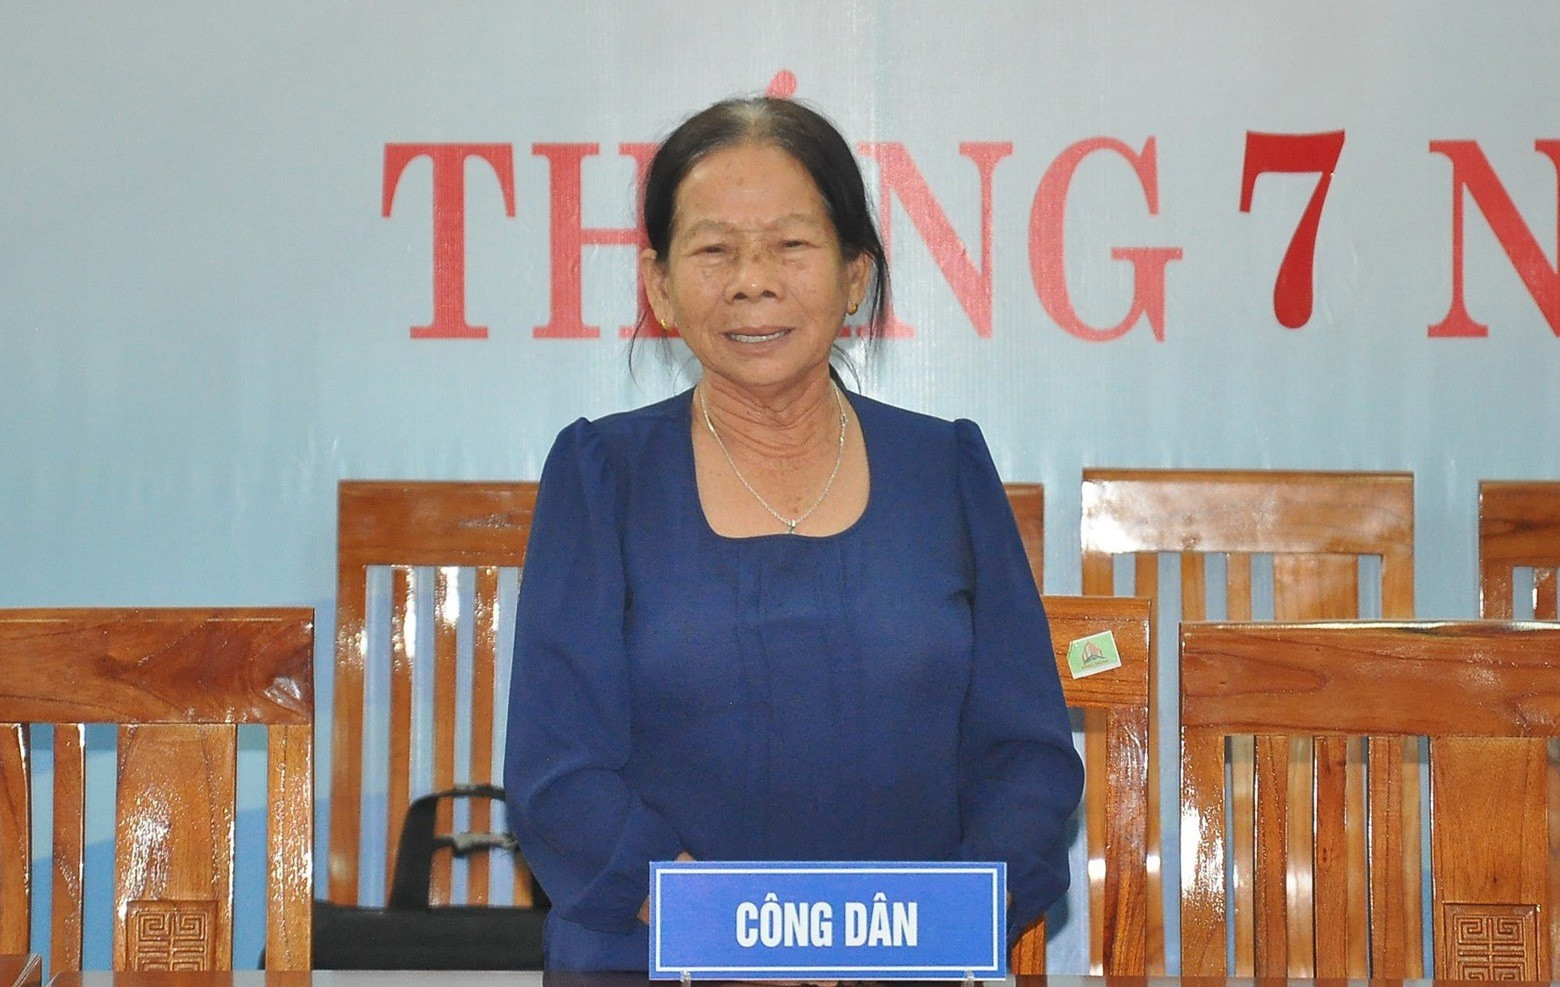 Hơn 9 năm trời (2011 - 2020), bà Lê Thị Phiên mang đơn khiếu nại đến các cấp có thẩm quyền để đòi đất, nhưng đến nay vụ việc vẫn chưa được giải quyết dứt điểm. Ảnh: VINH ANH